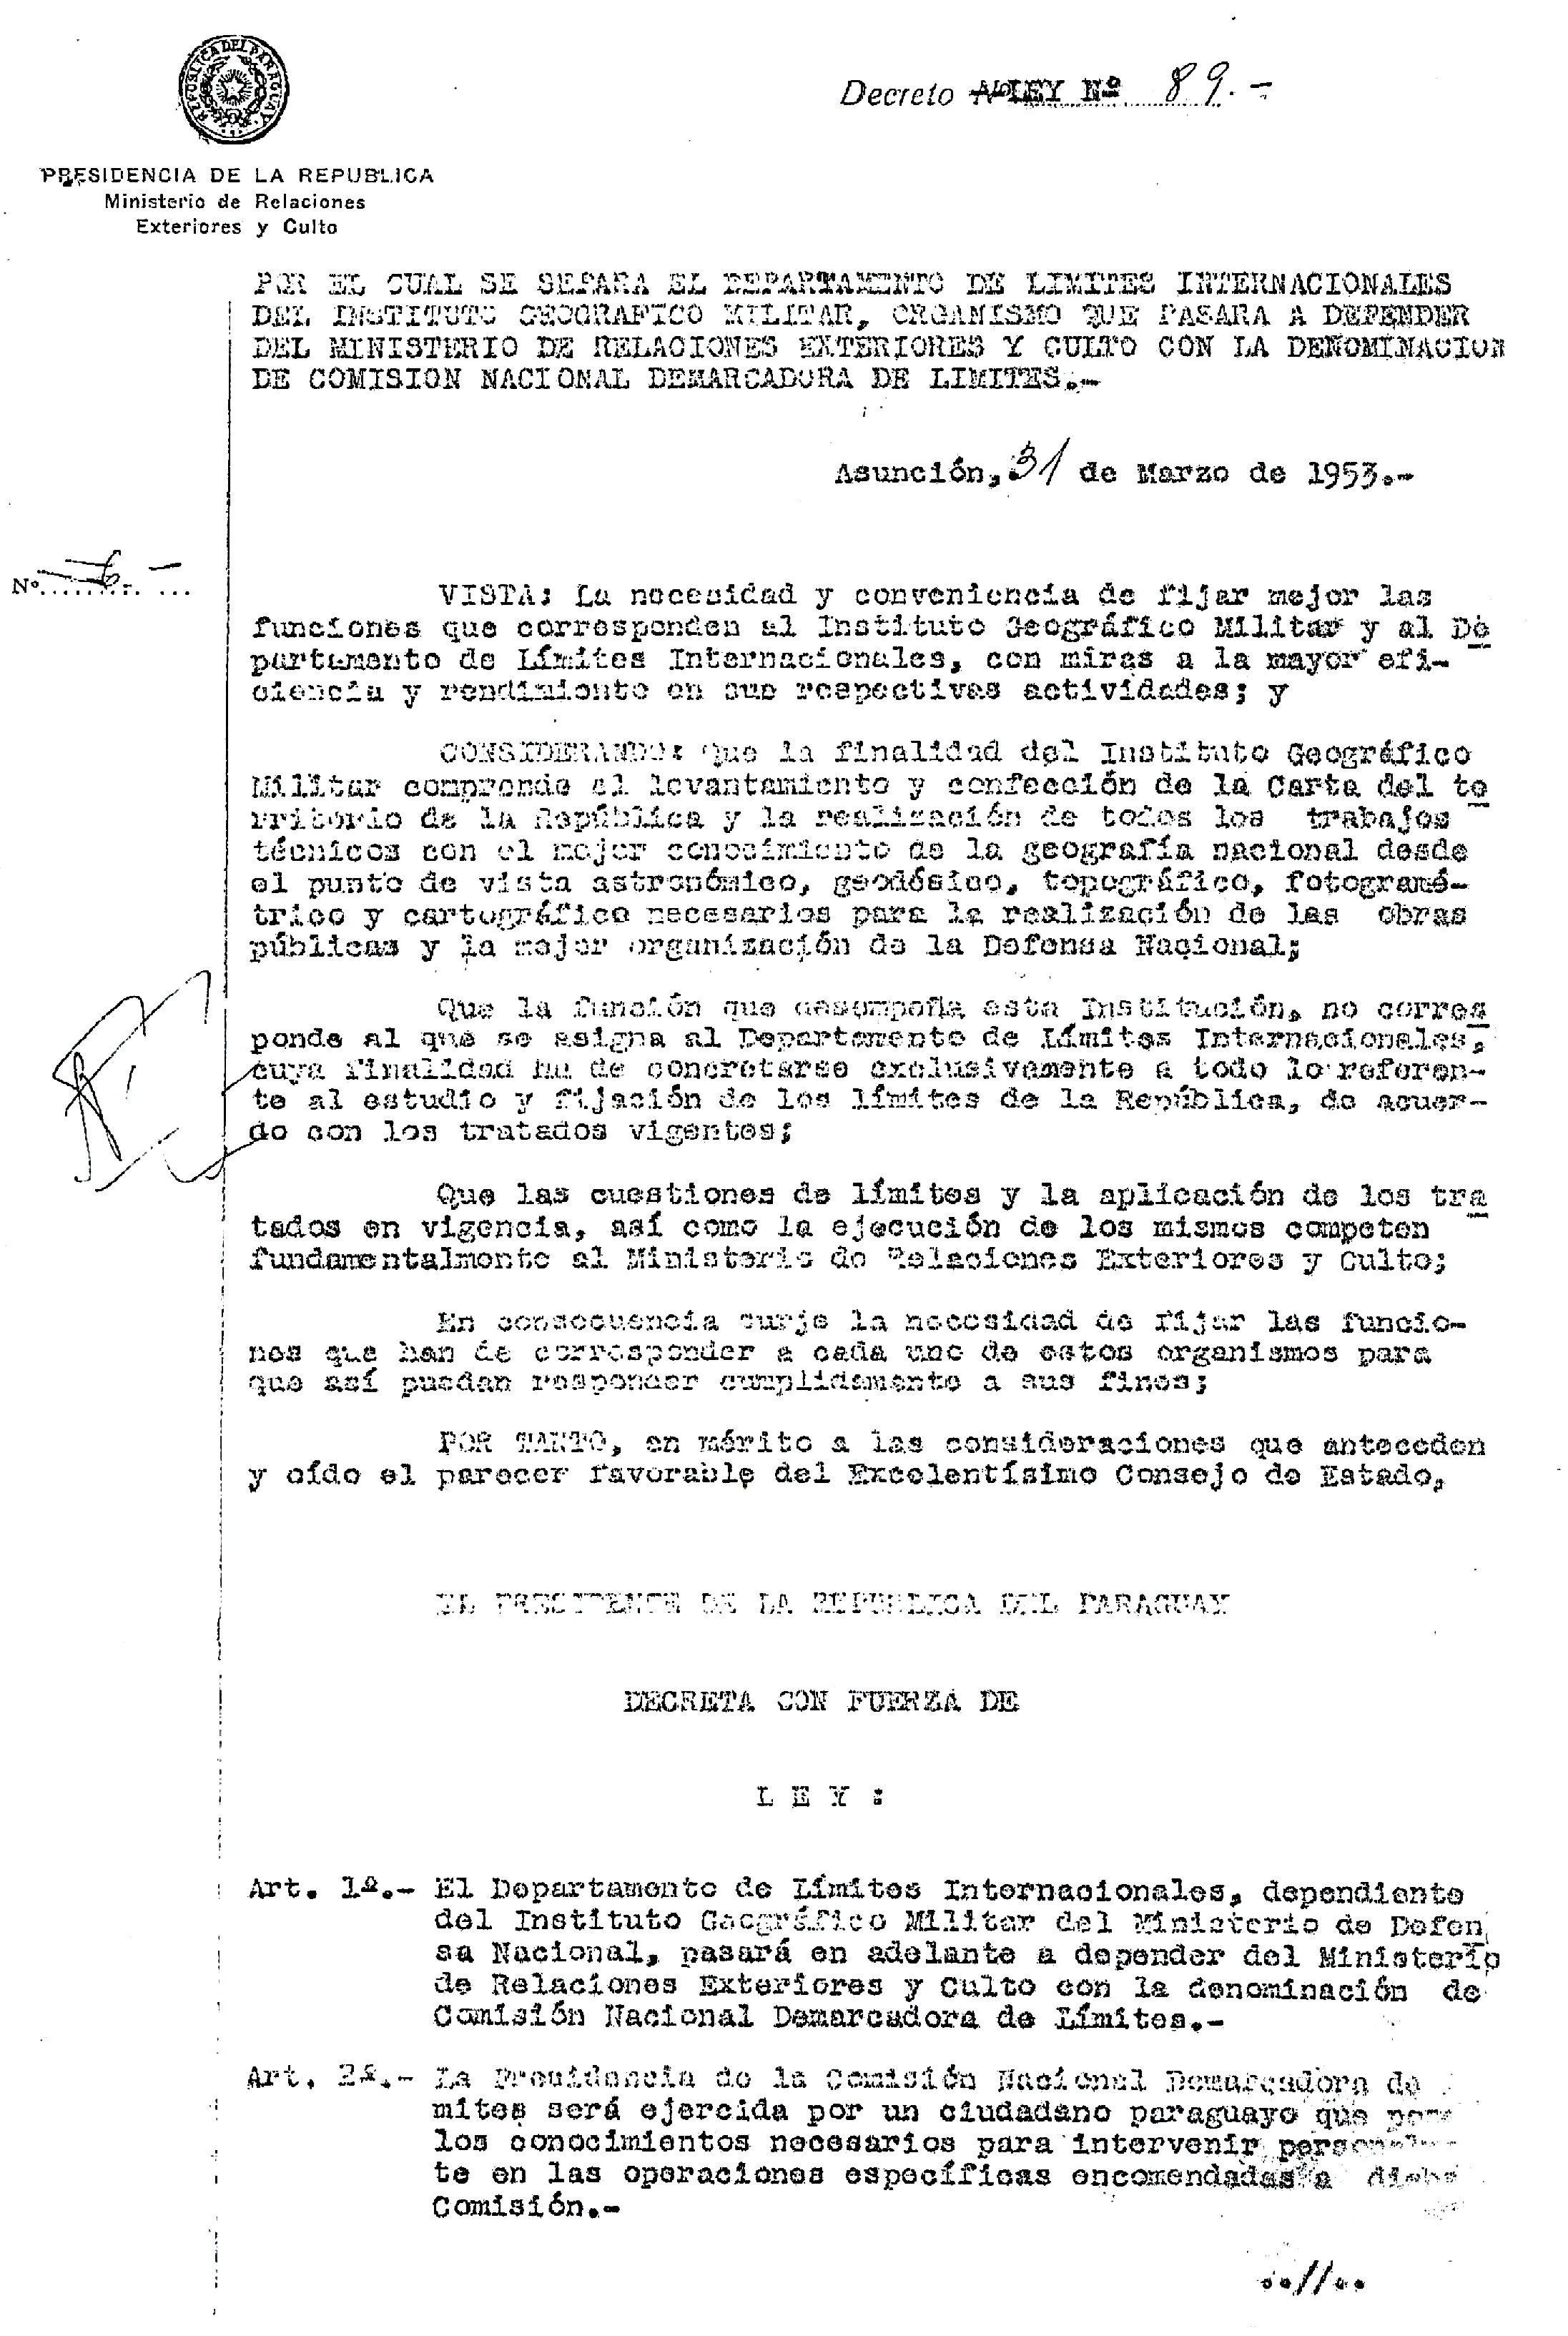 Decreto 89 -1953 -Creacion CNDL-web.jpg